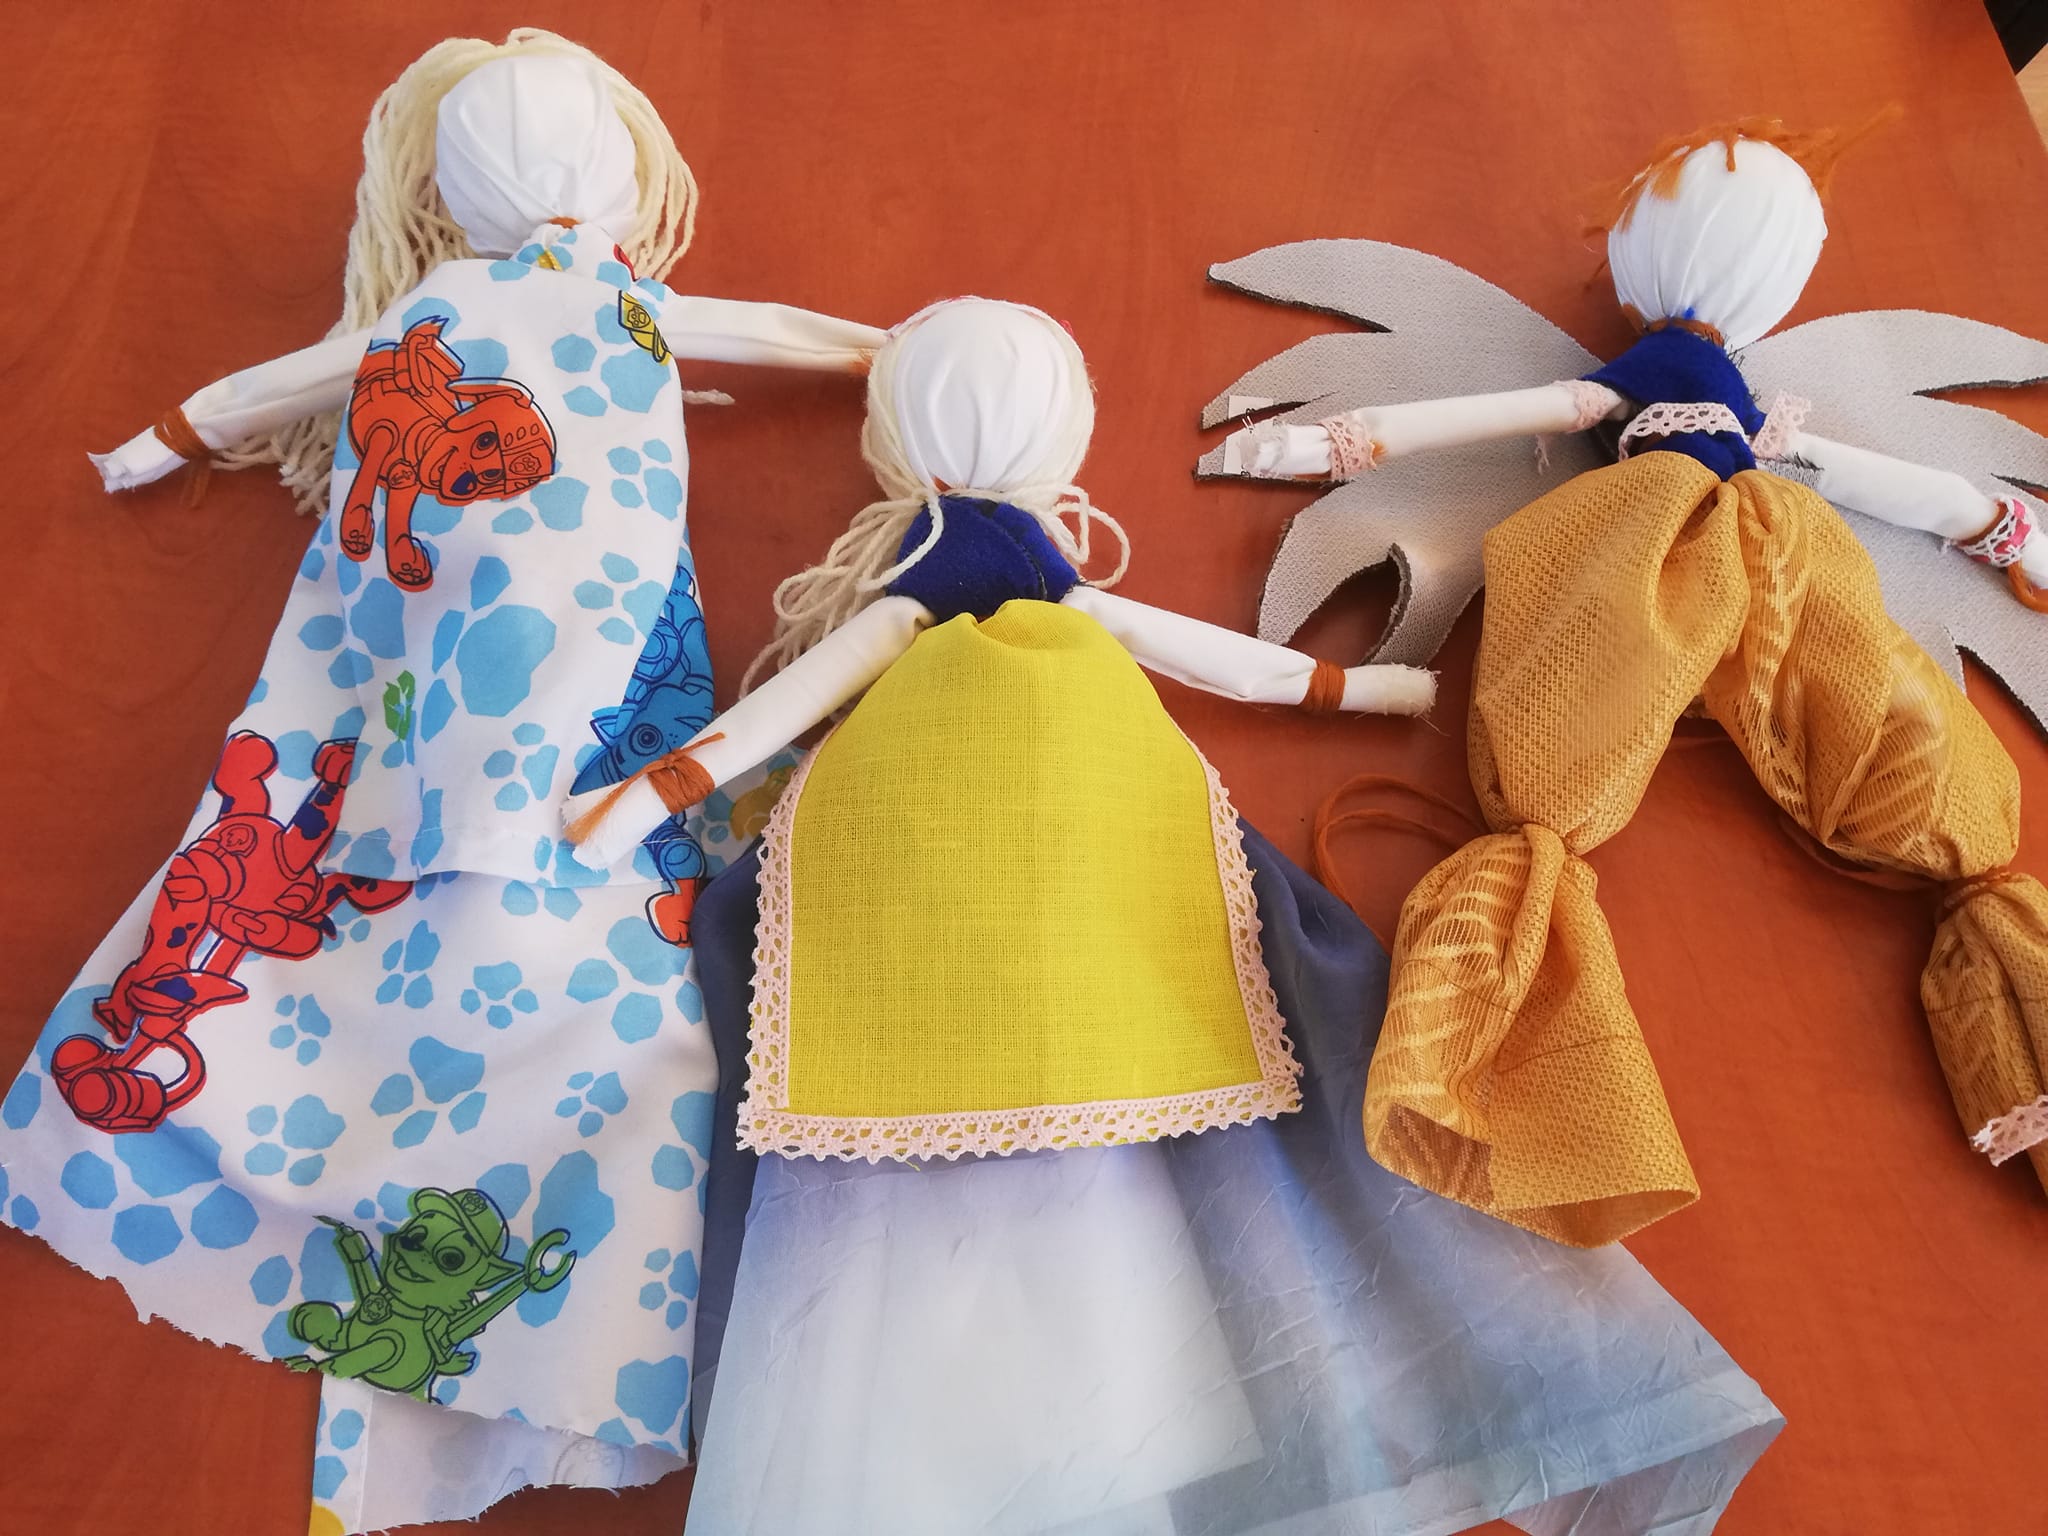 Trzy lalki motanki wykonane ze szmatek i włóczki